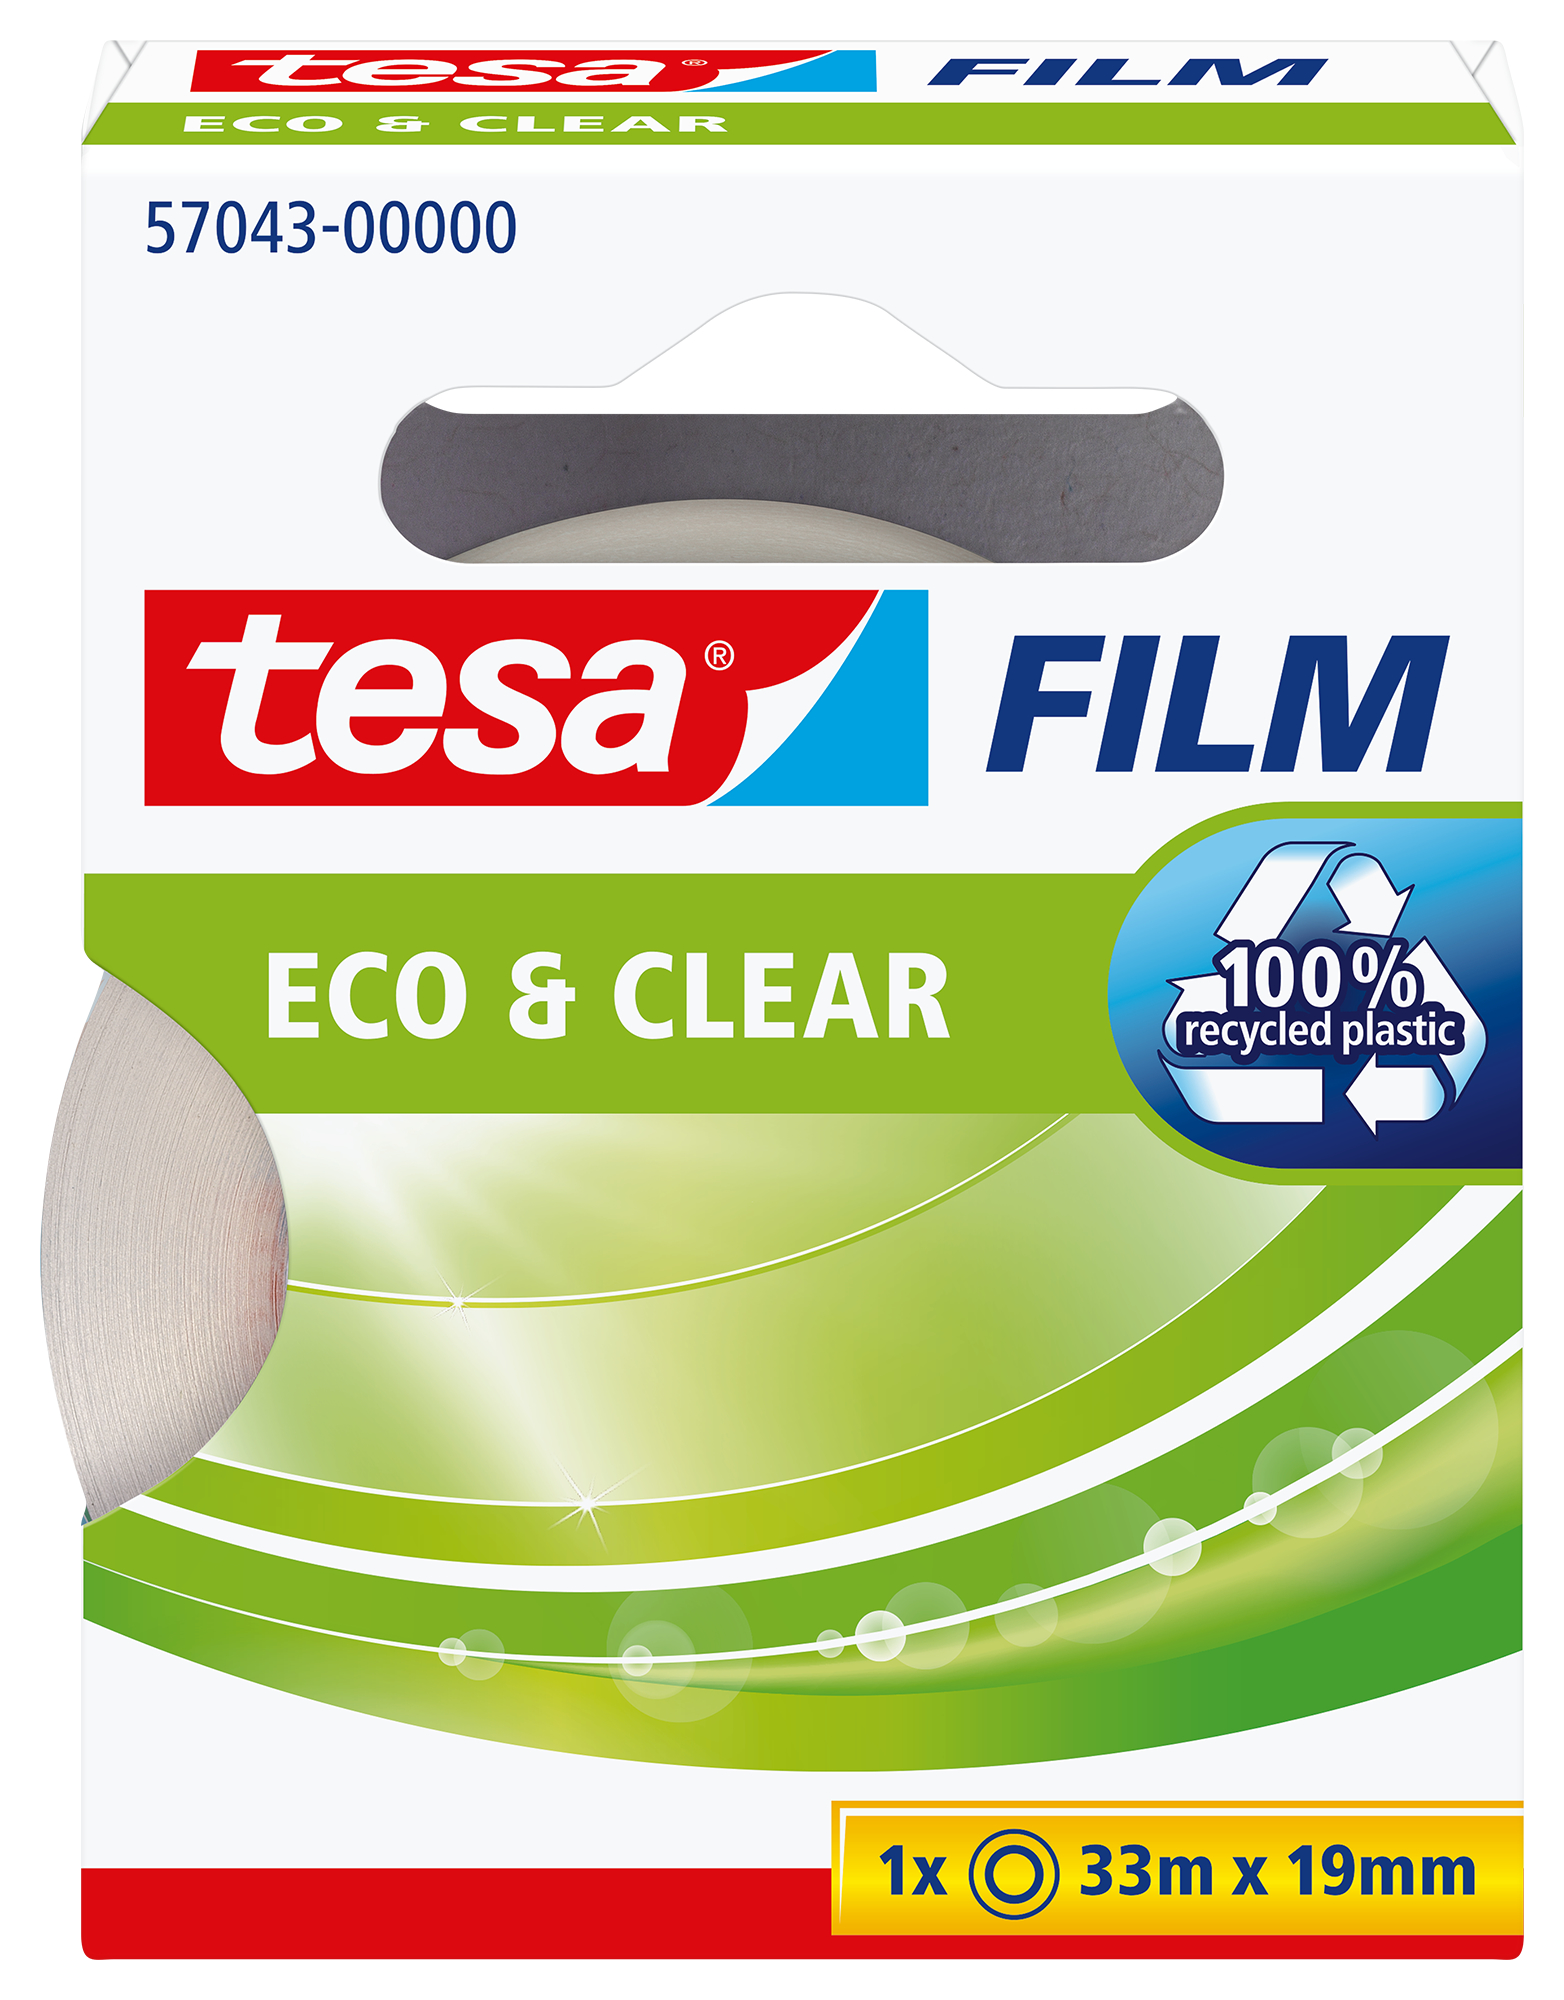 TESA Ruban adhés.eco&clear 33mx19mm 570430000 sans solvant sans solvant